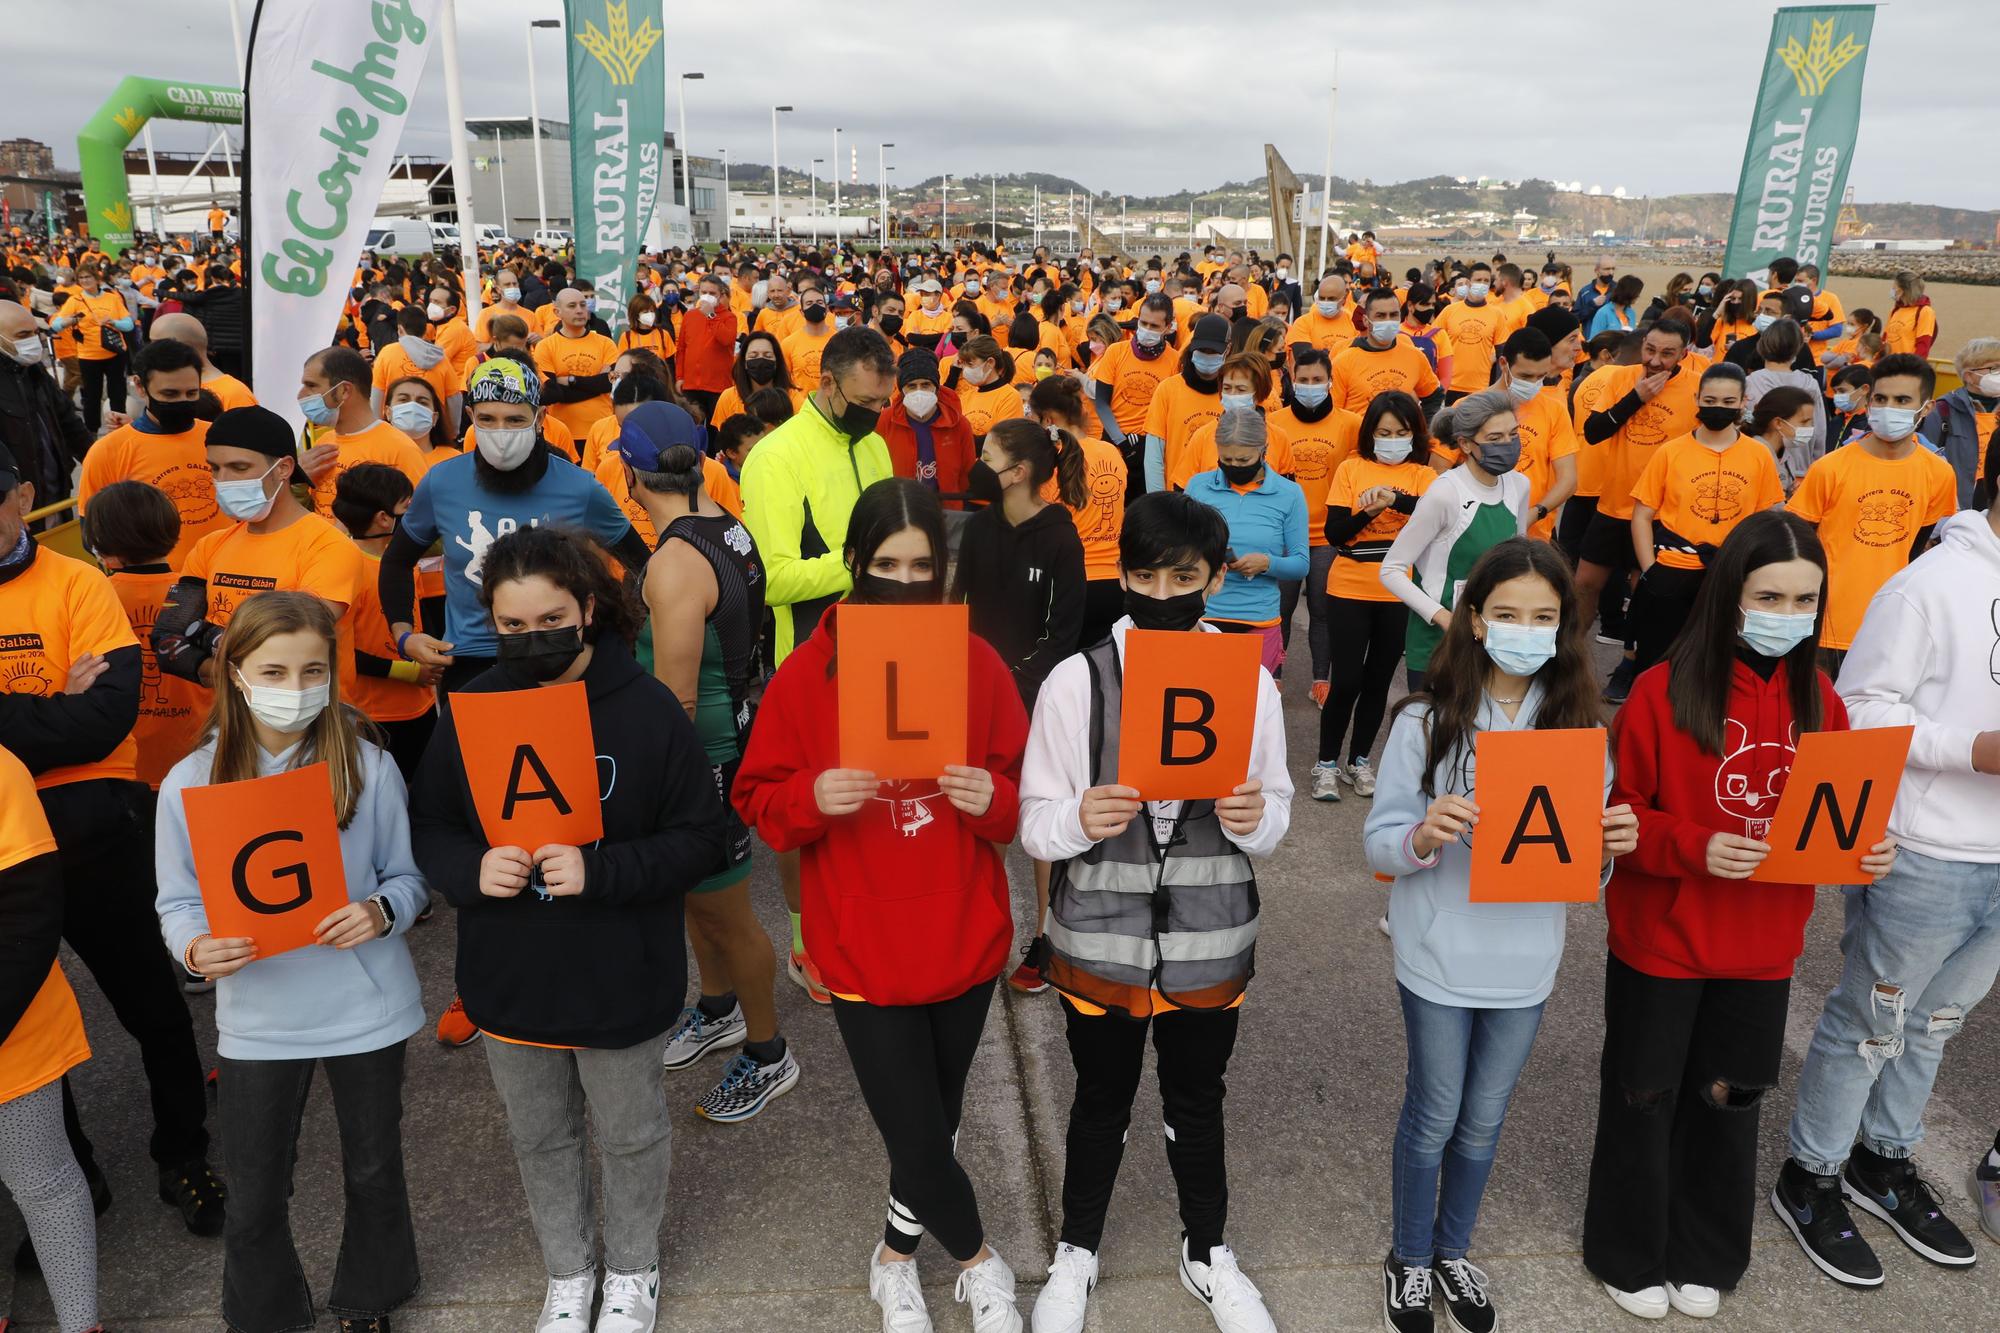 Carrera solidaria de Galbán en Gijón